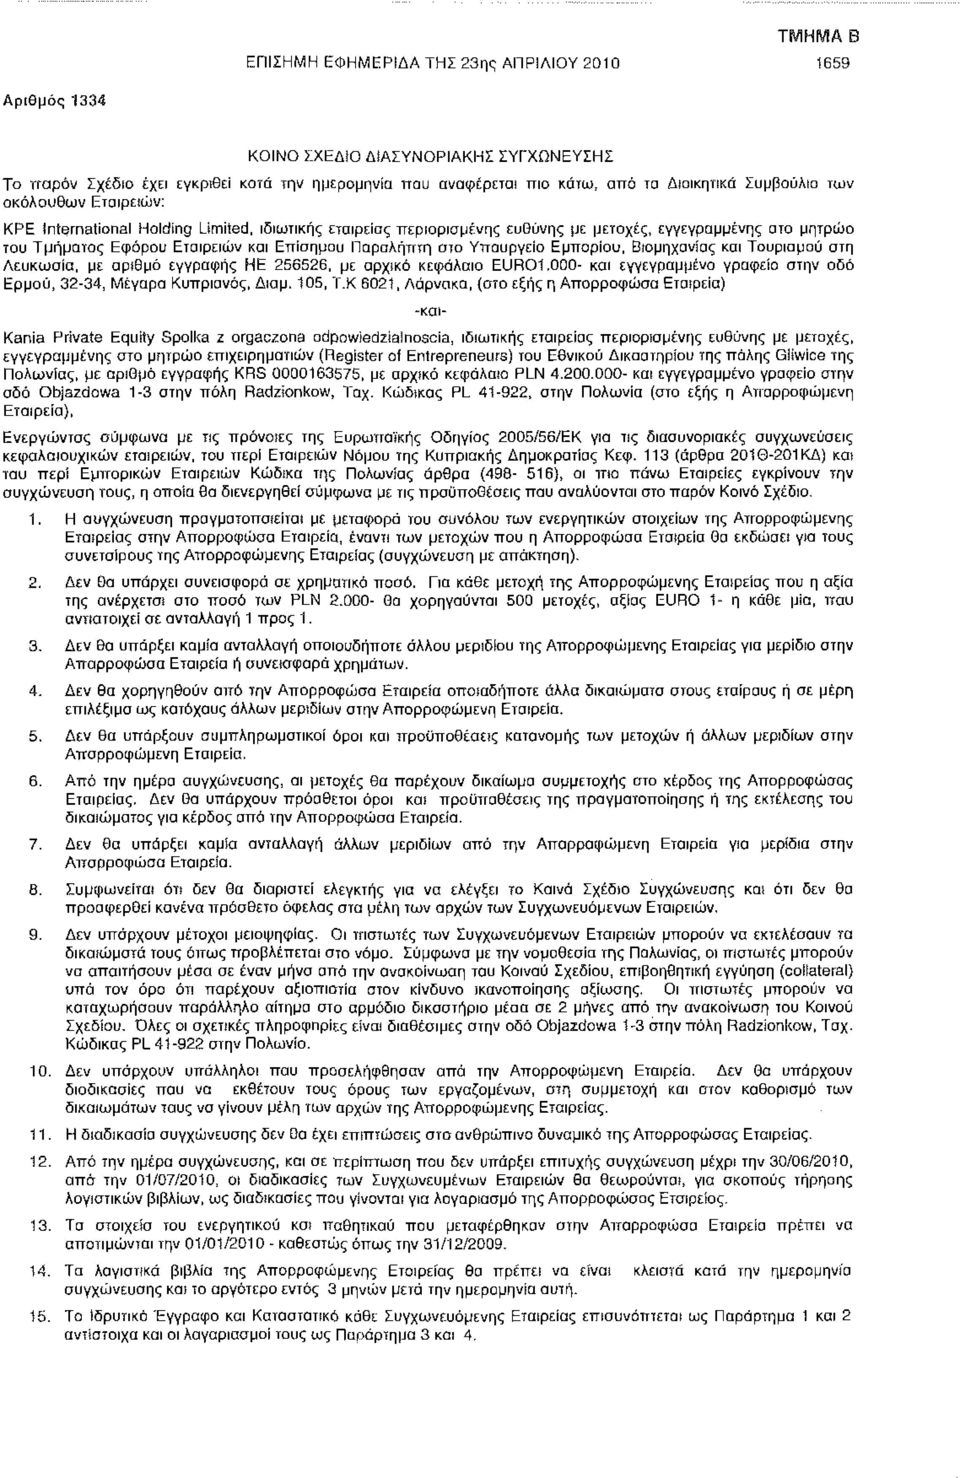 ευθύνης ρε μετοχές, εγγεγραμμένης στο μητρώο του Τμήματος Εφόρου Εταιρειών και Επίσημου Παραλήπτη στο Υπουργείο Εμπορίου, Βιομηχανίας και Τουρισμού στη Λευκωσία, με αριθμό εγγραφής HE 256526, με